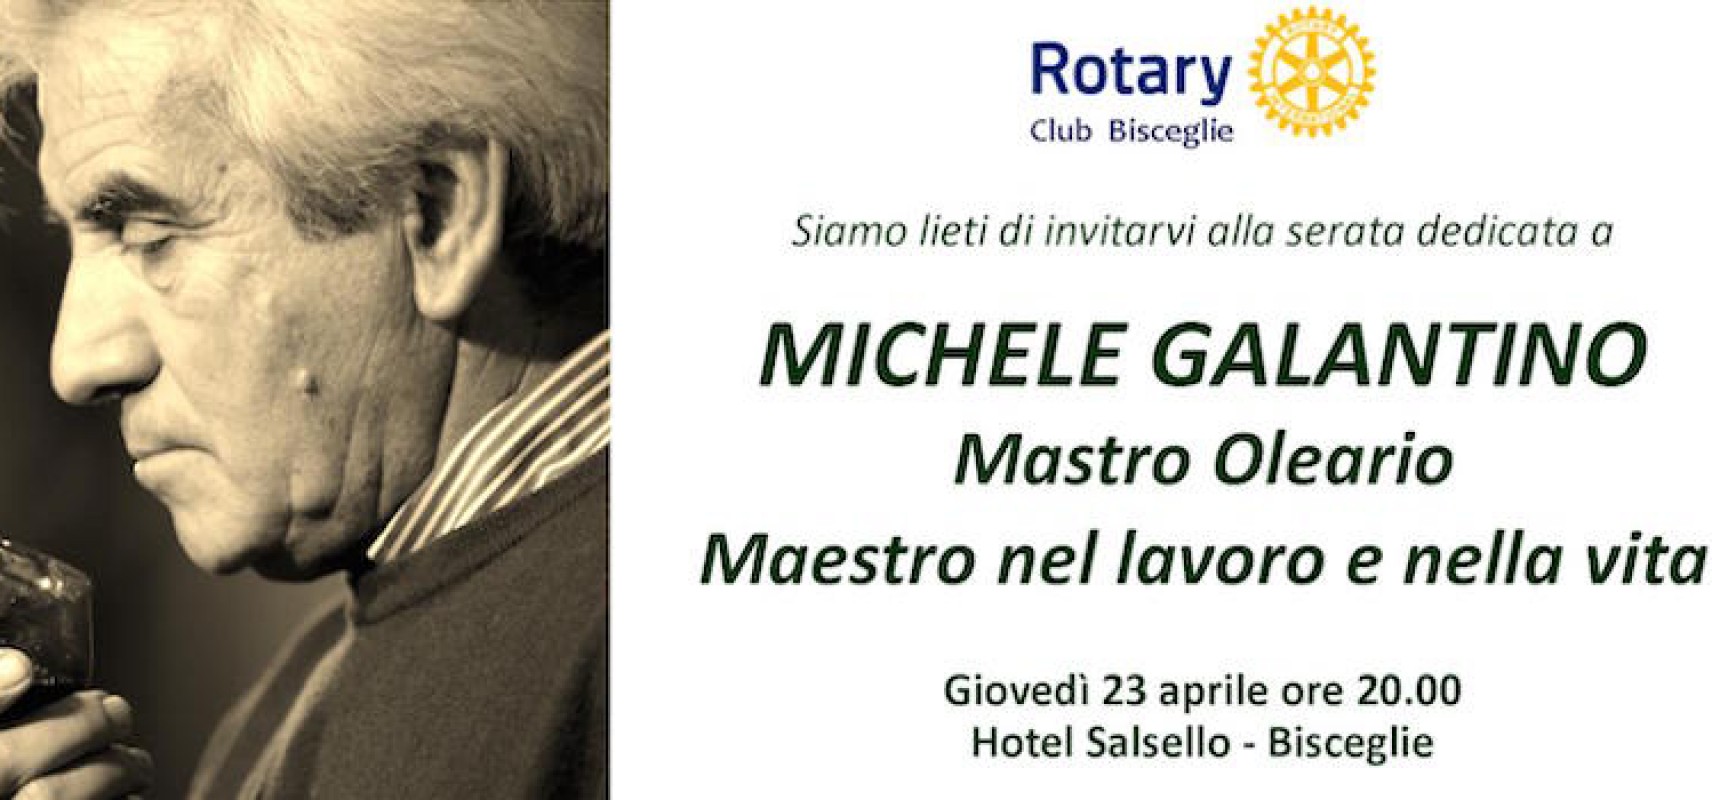 Il Rotary Club ricorda Michele Galantino presso l’Hotel Salsello